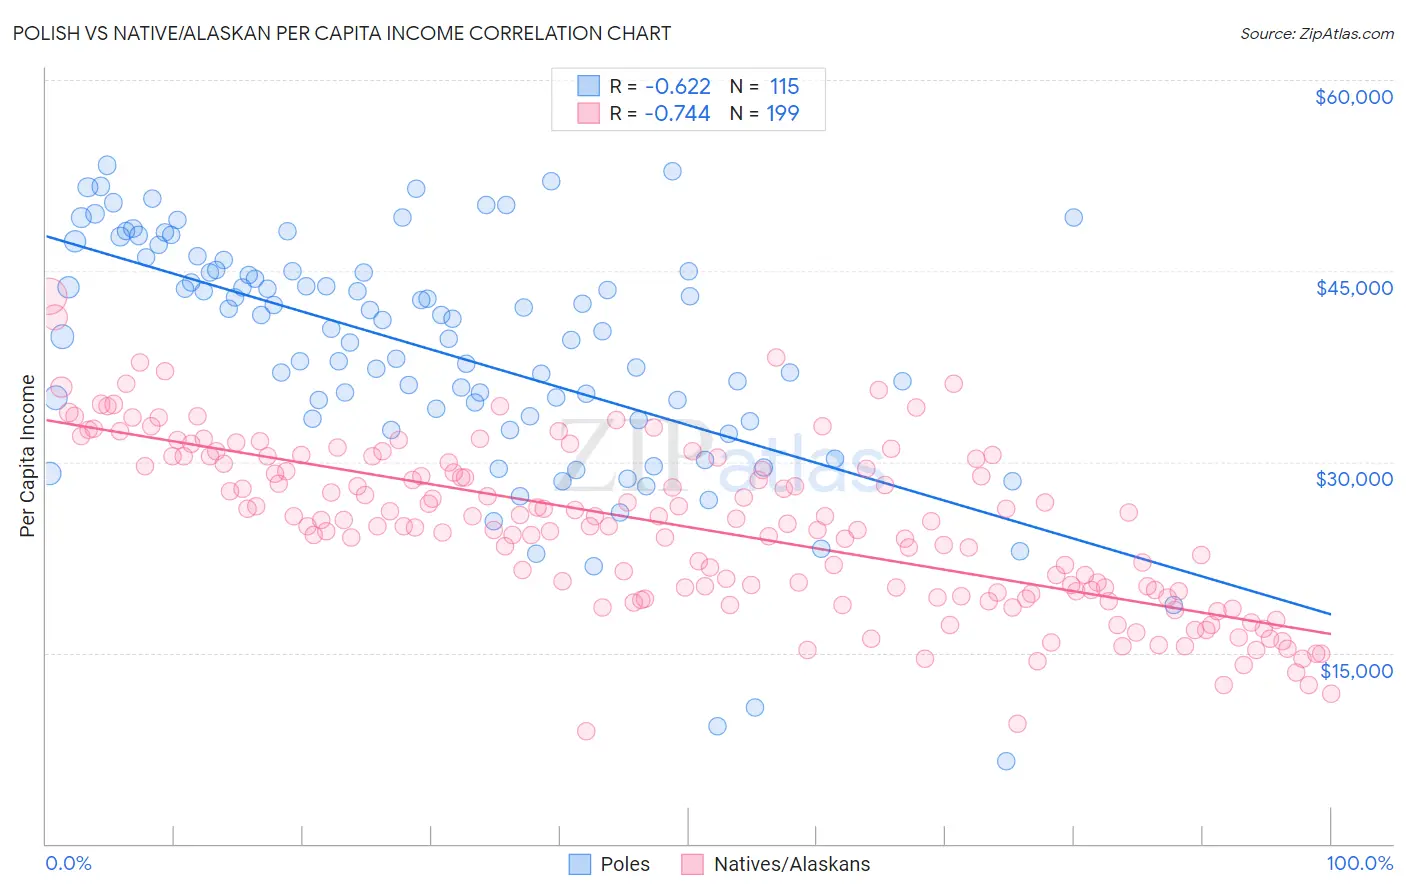 Polish vs Native/Alaskan Per Capita Income